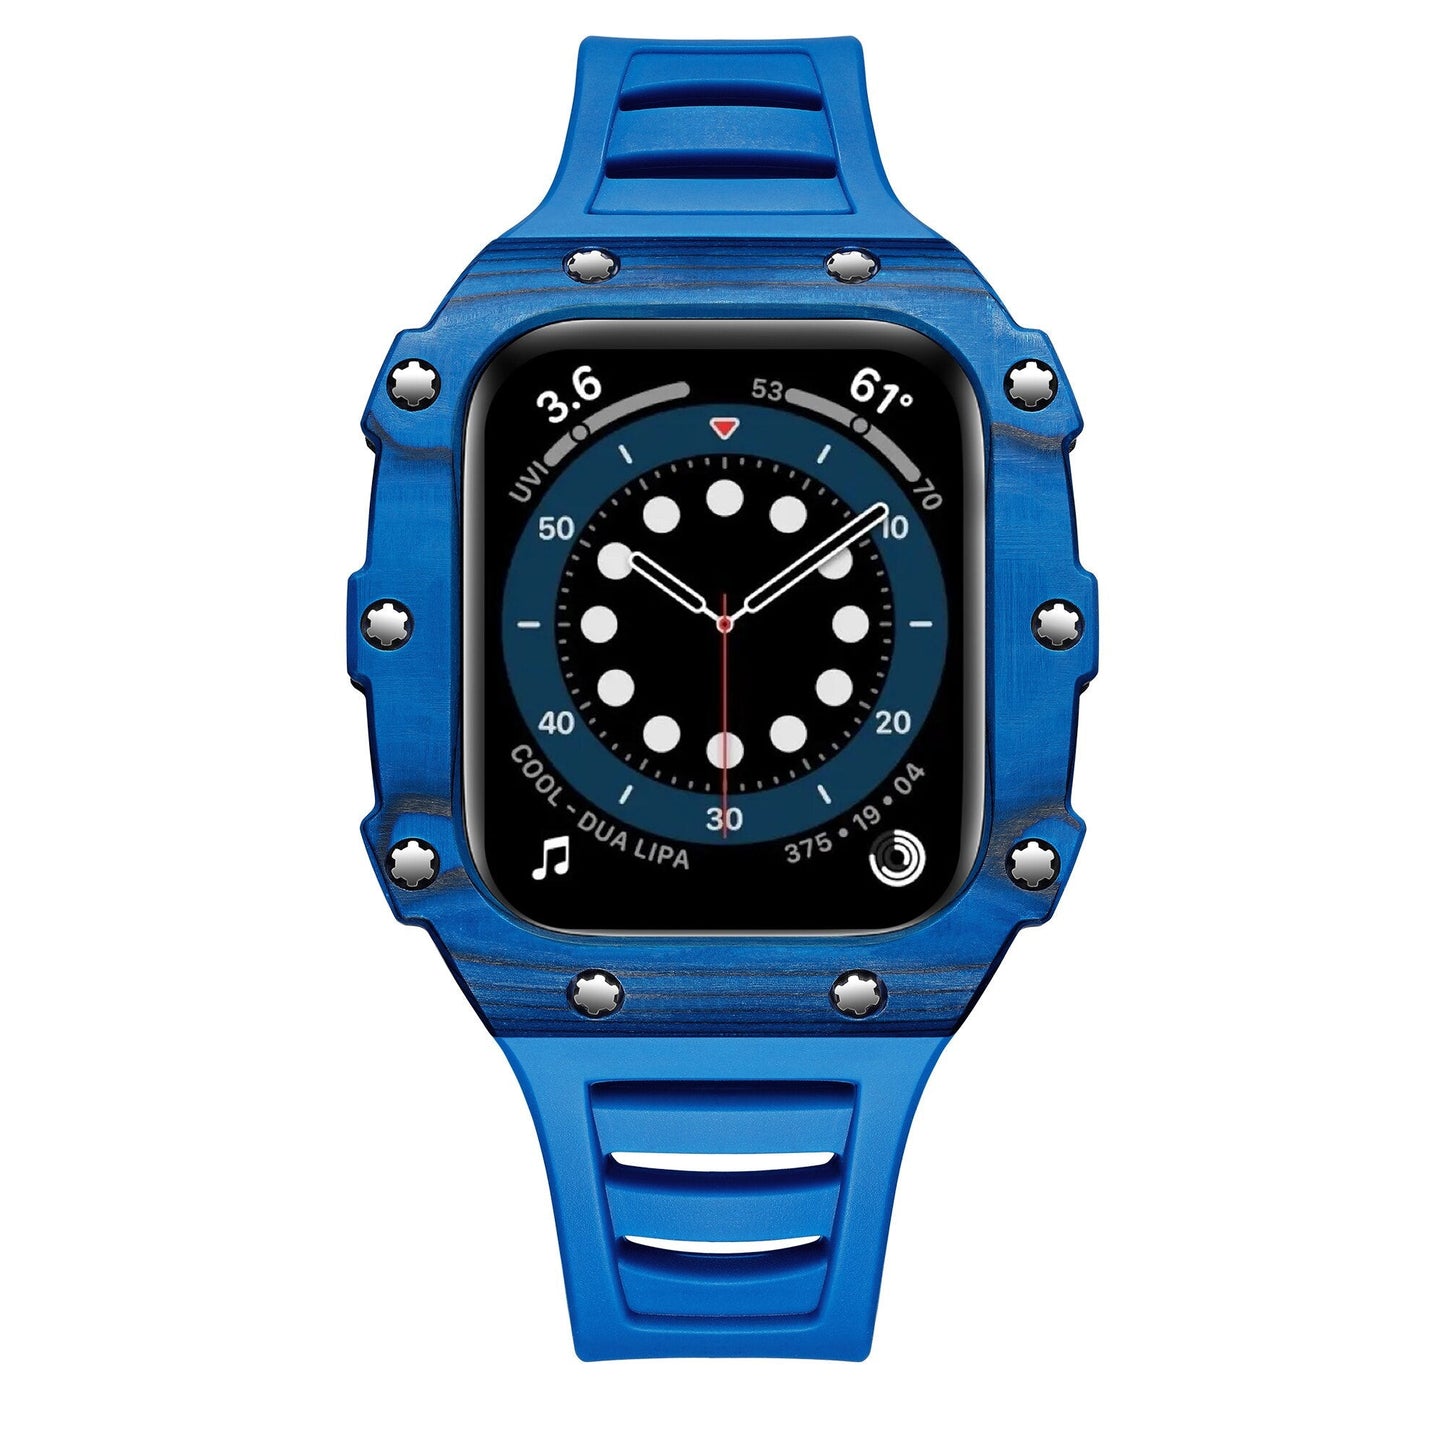 Luxury Apple Watch Cases - ArtZMiami